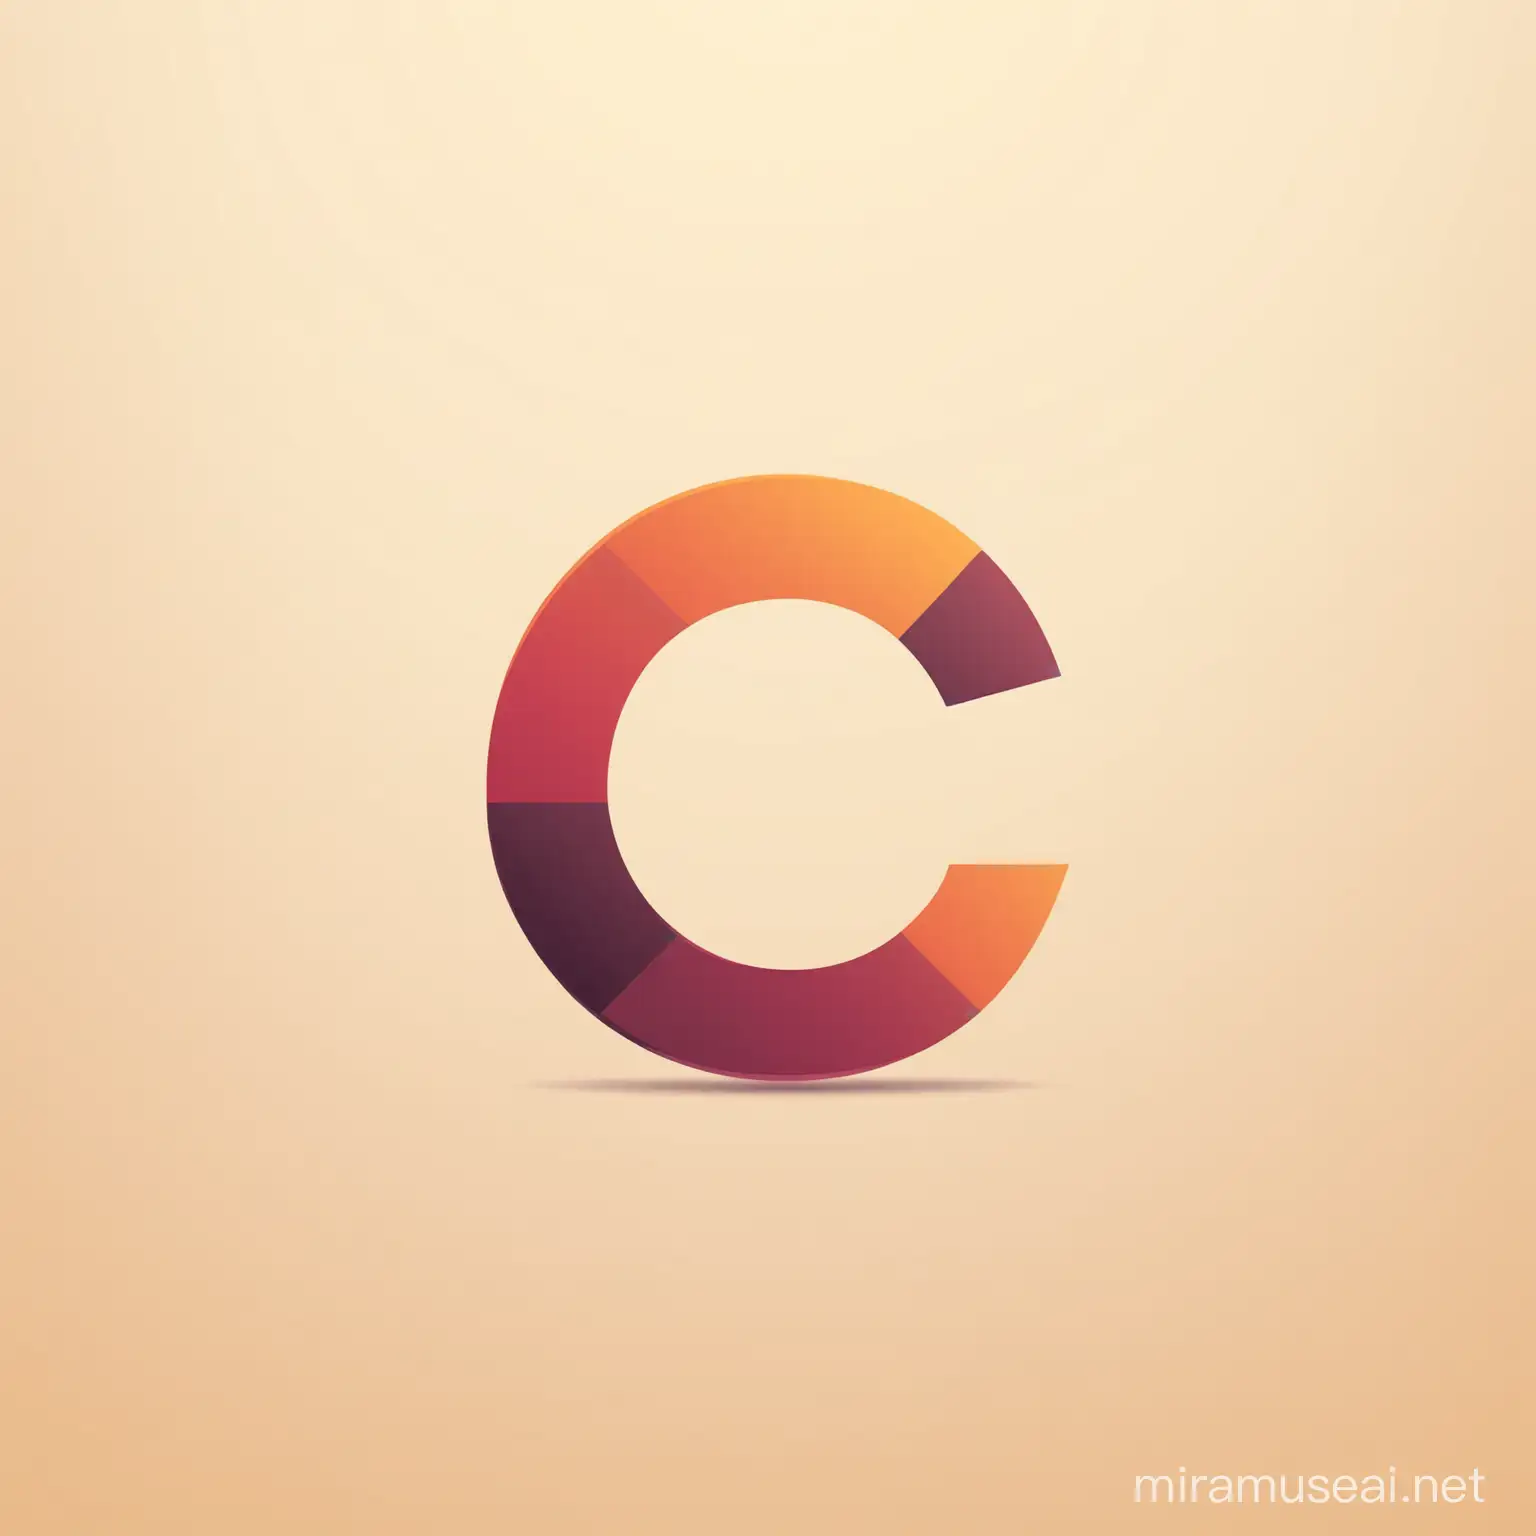 buatkan logo unik dengan huruf C